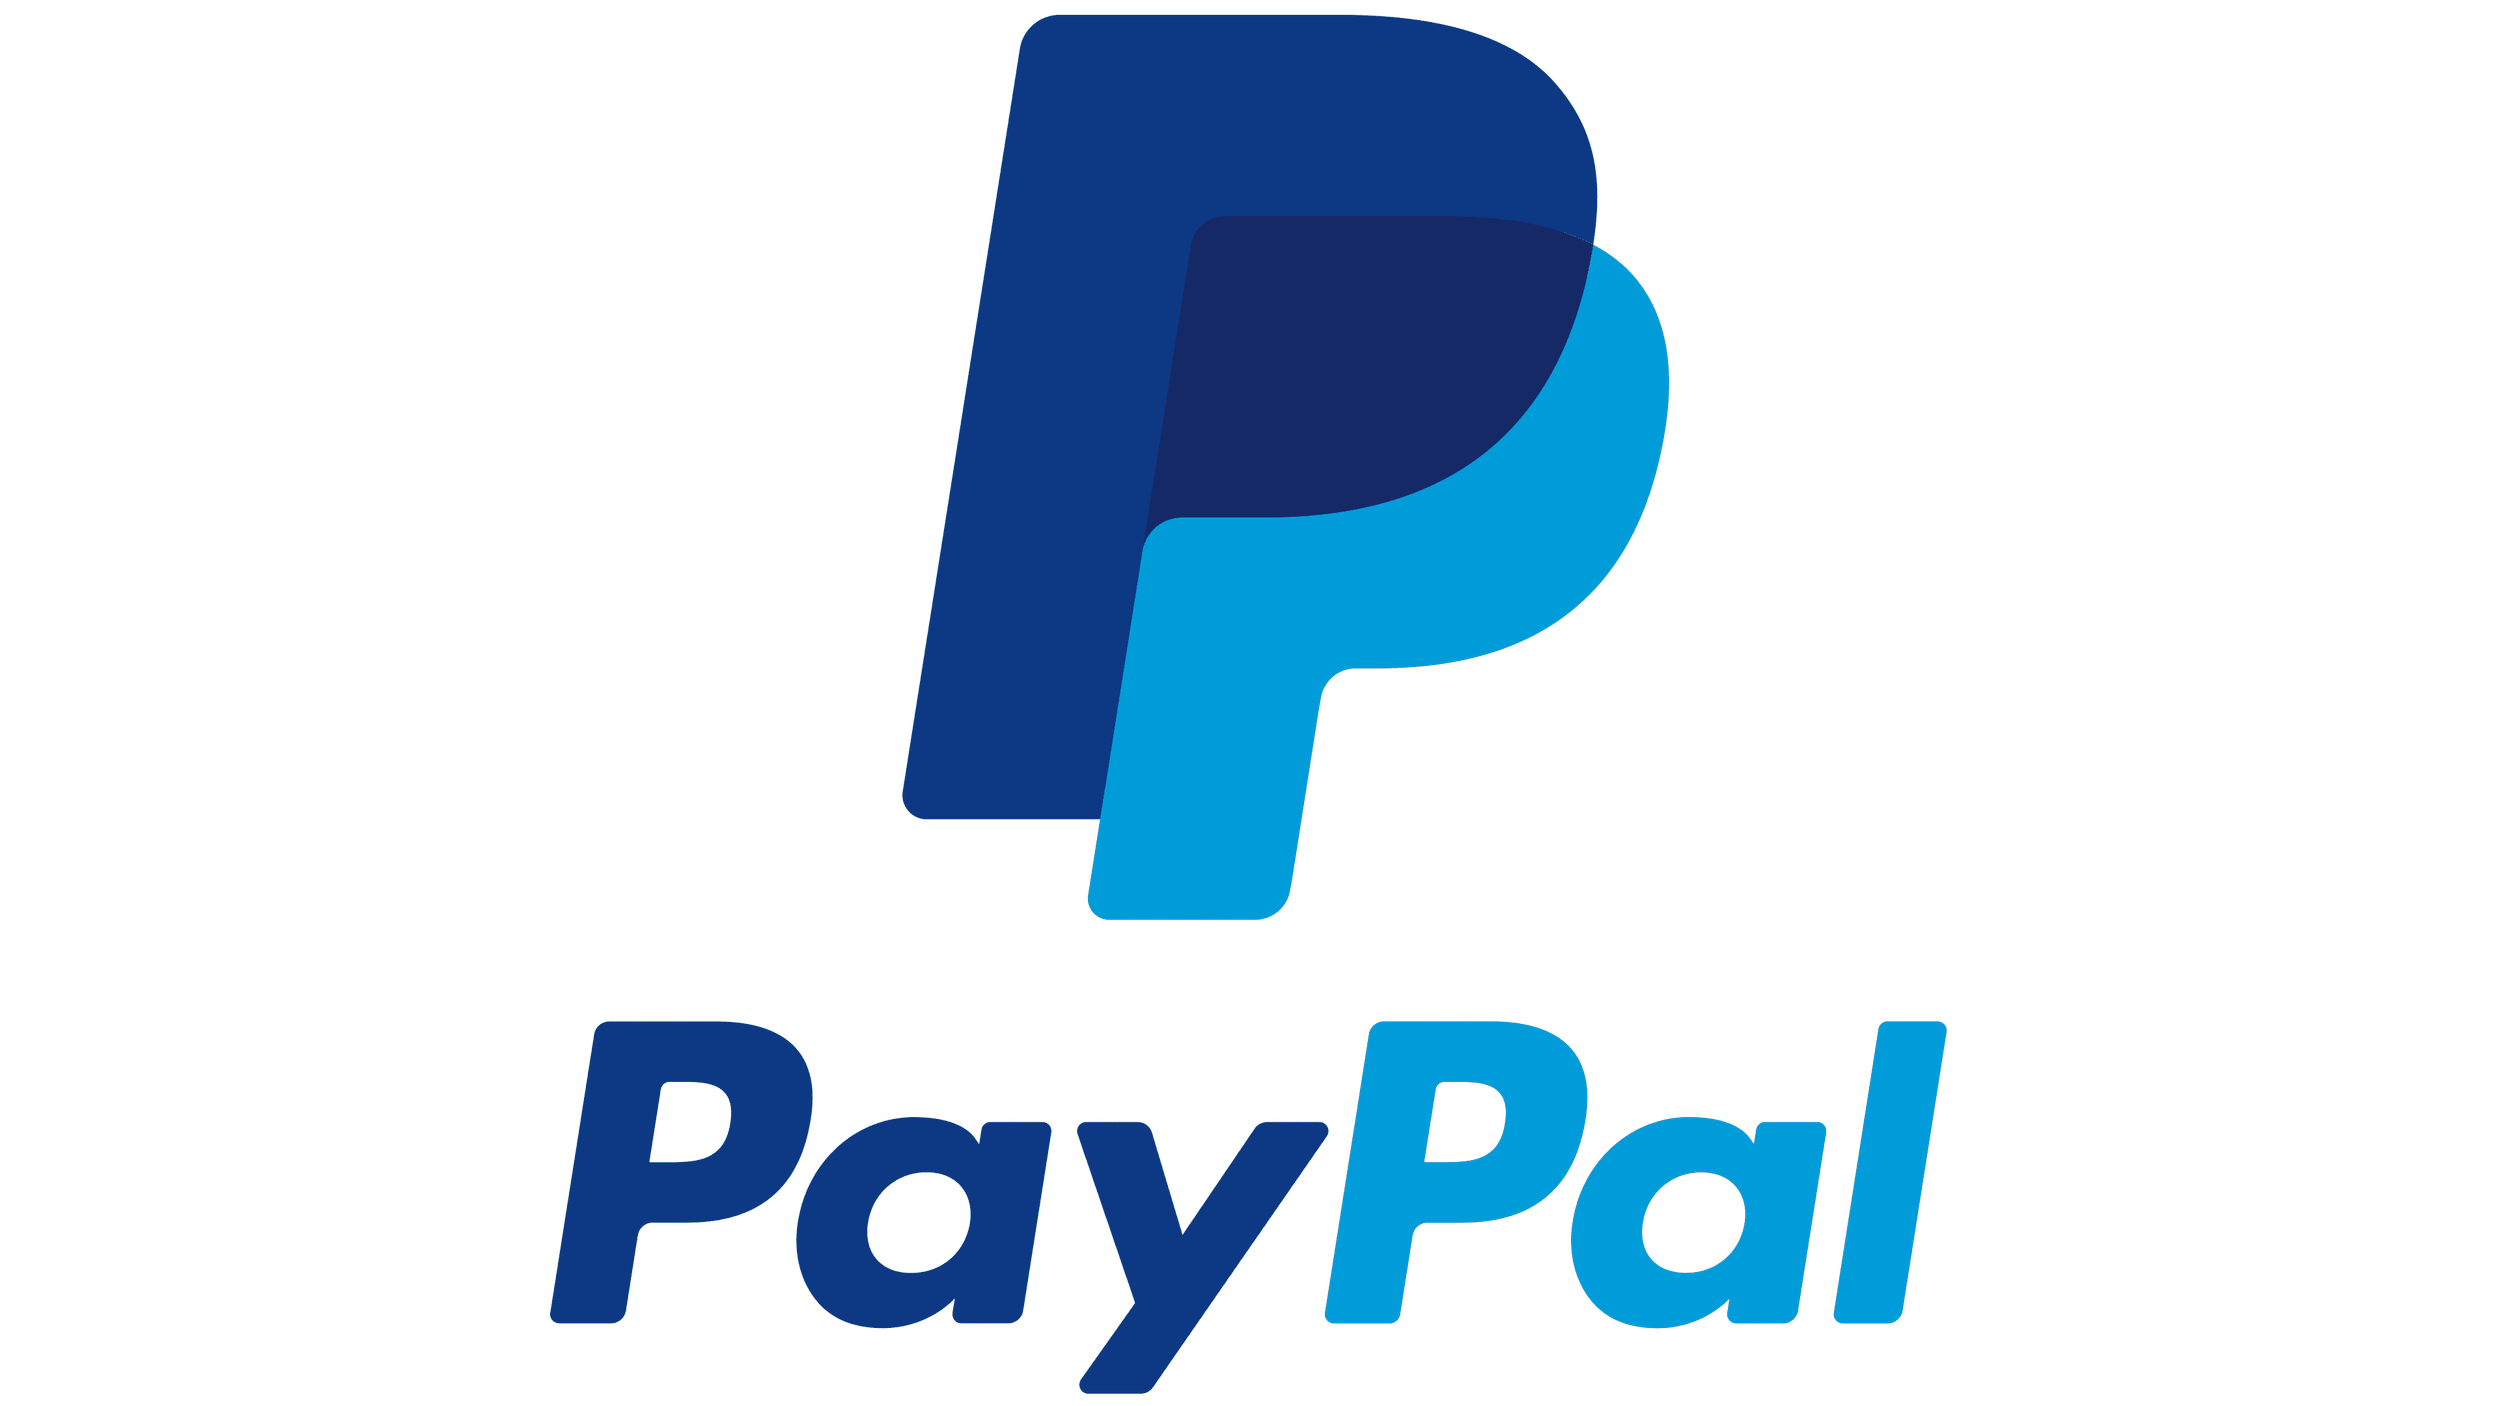 PayPal-Emblem.png